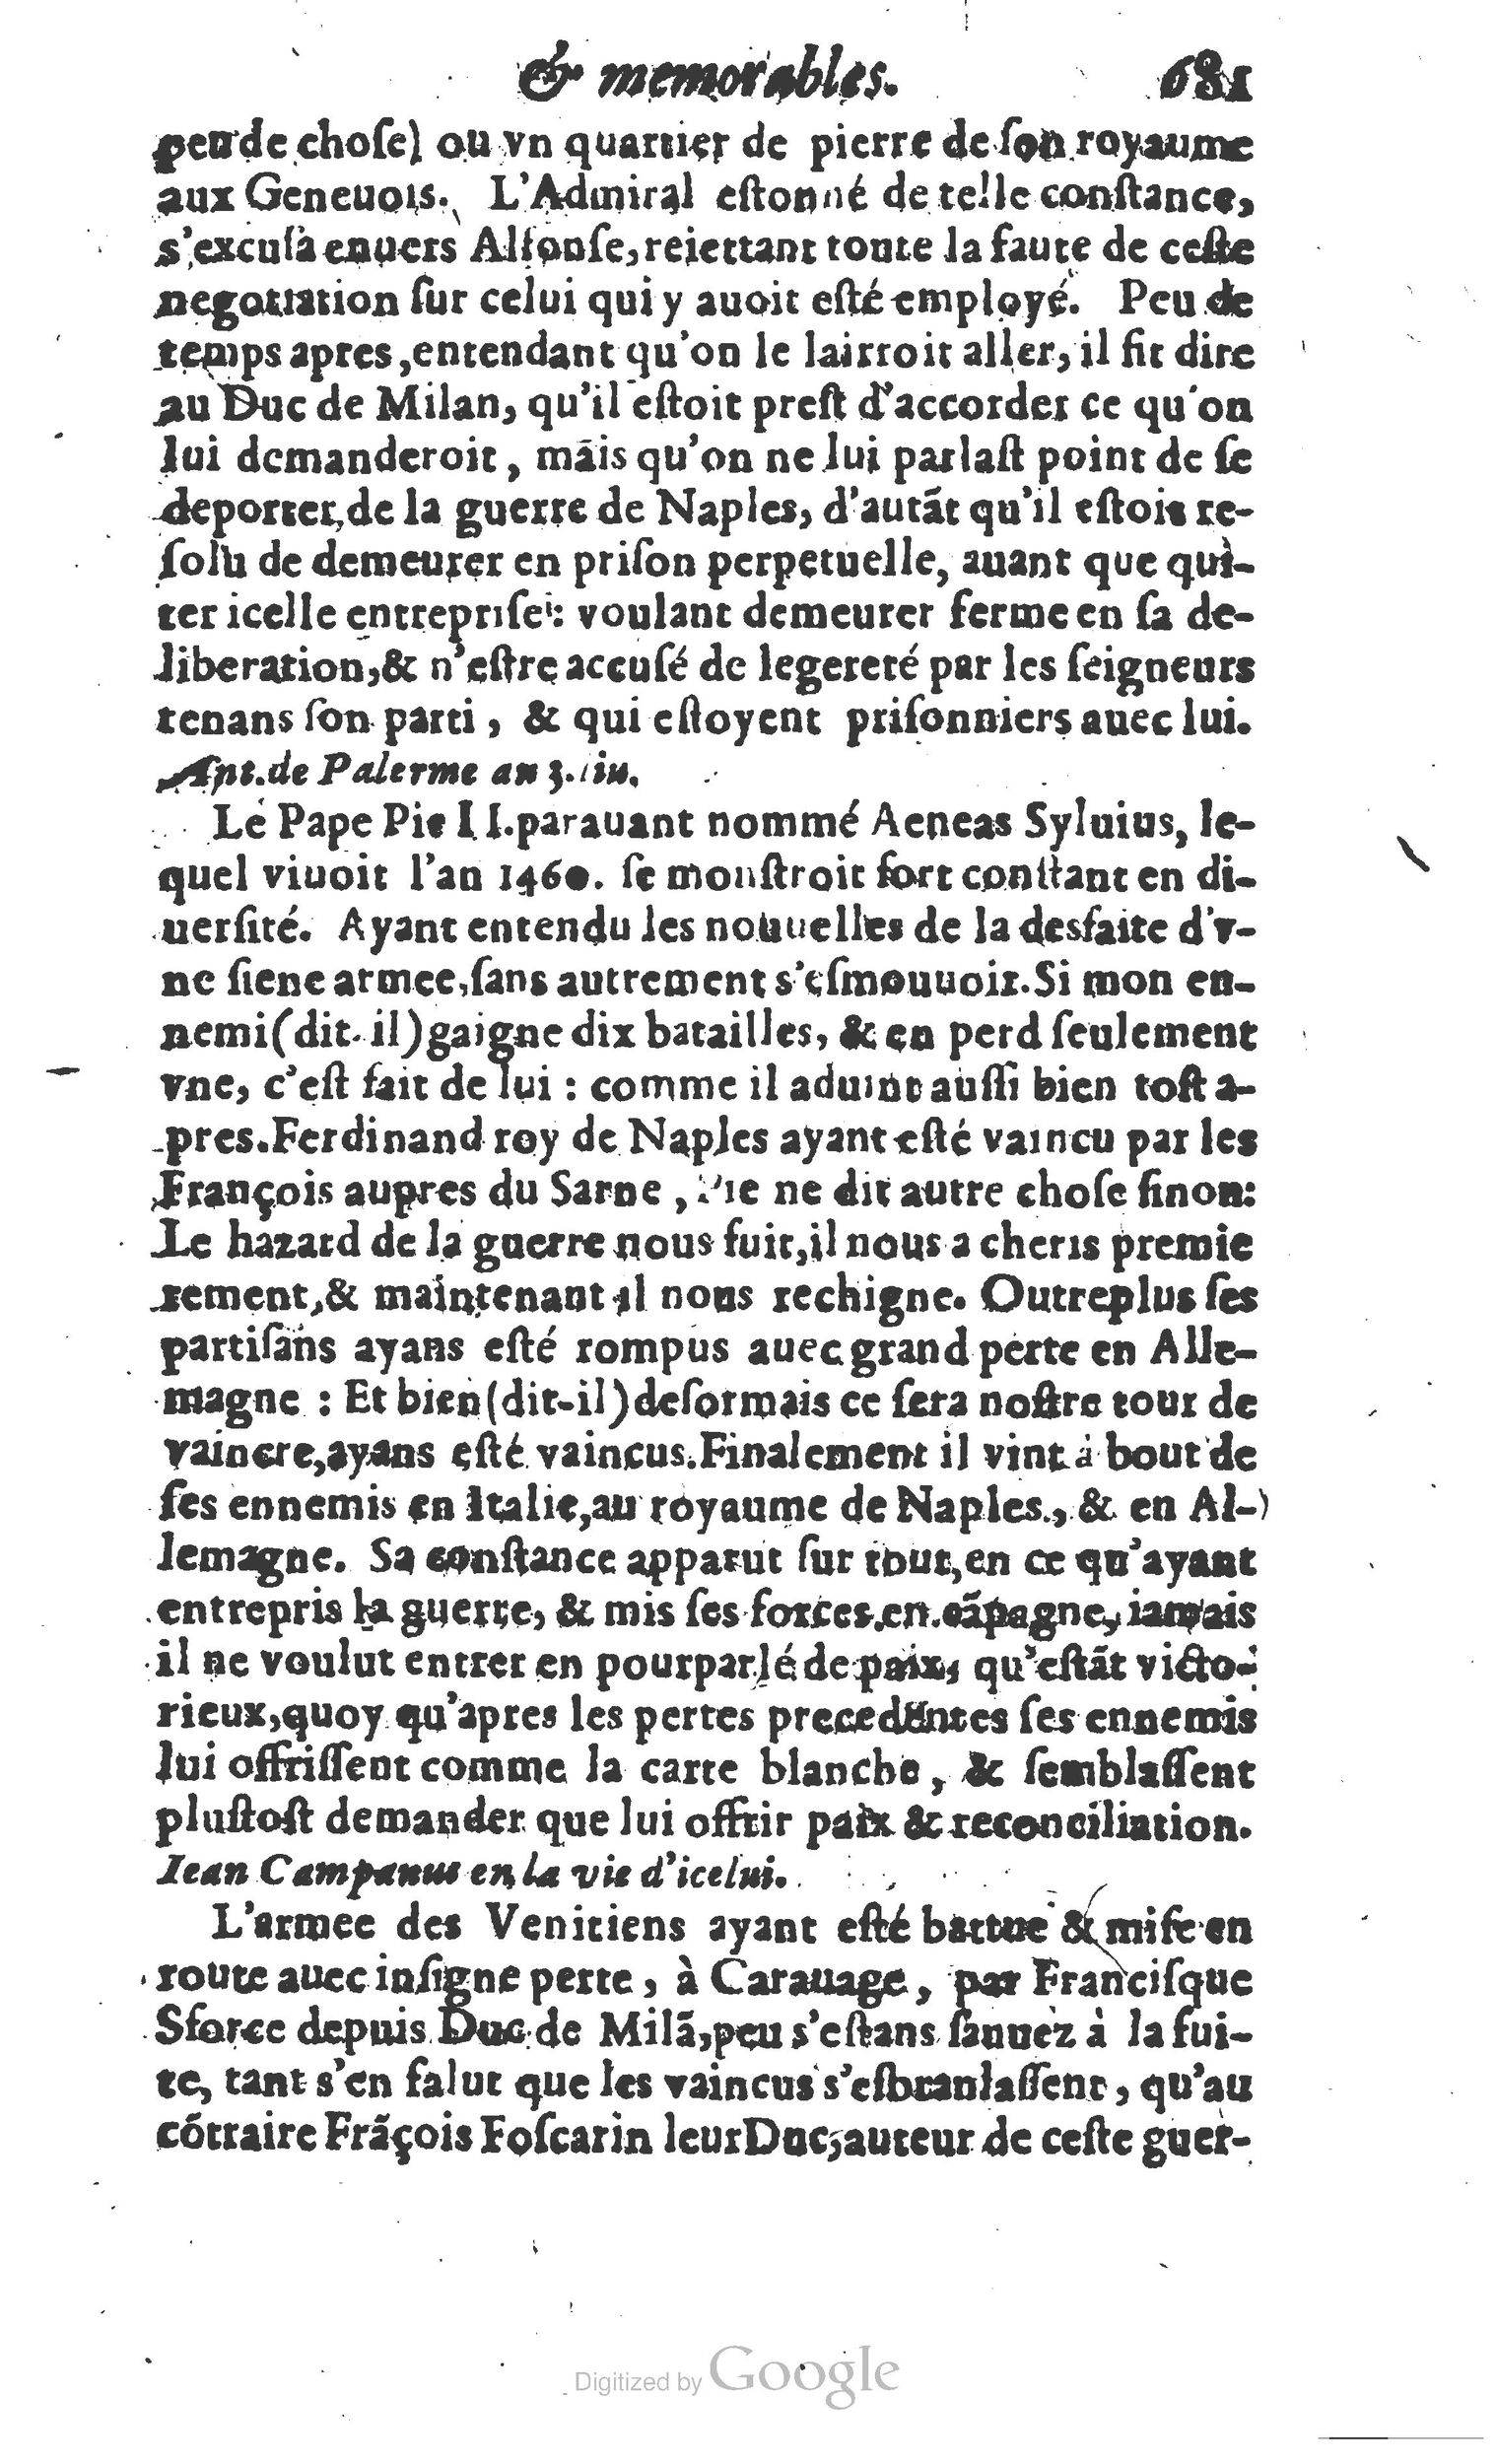 1610 Trésor d’histoires admirables et mémorables de nostre temps Marceau Princeton_Page_0702.jpg